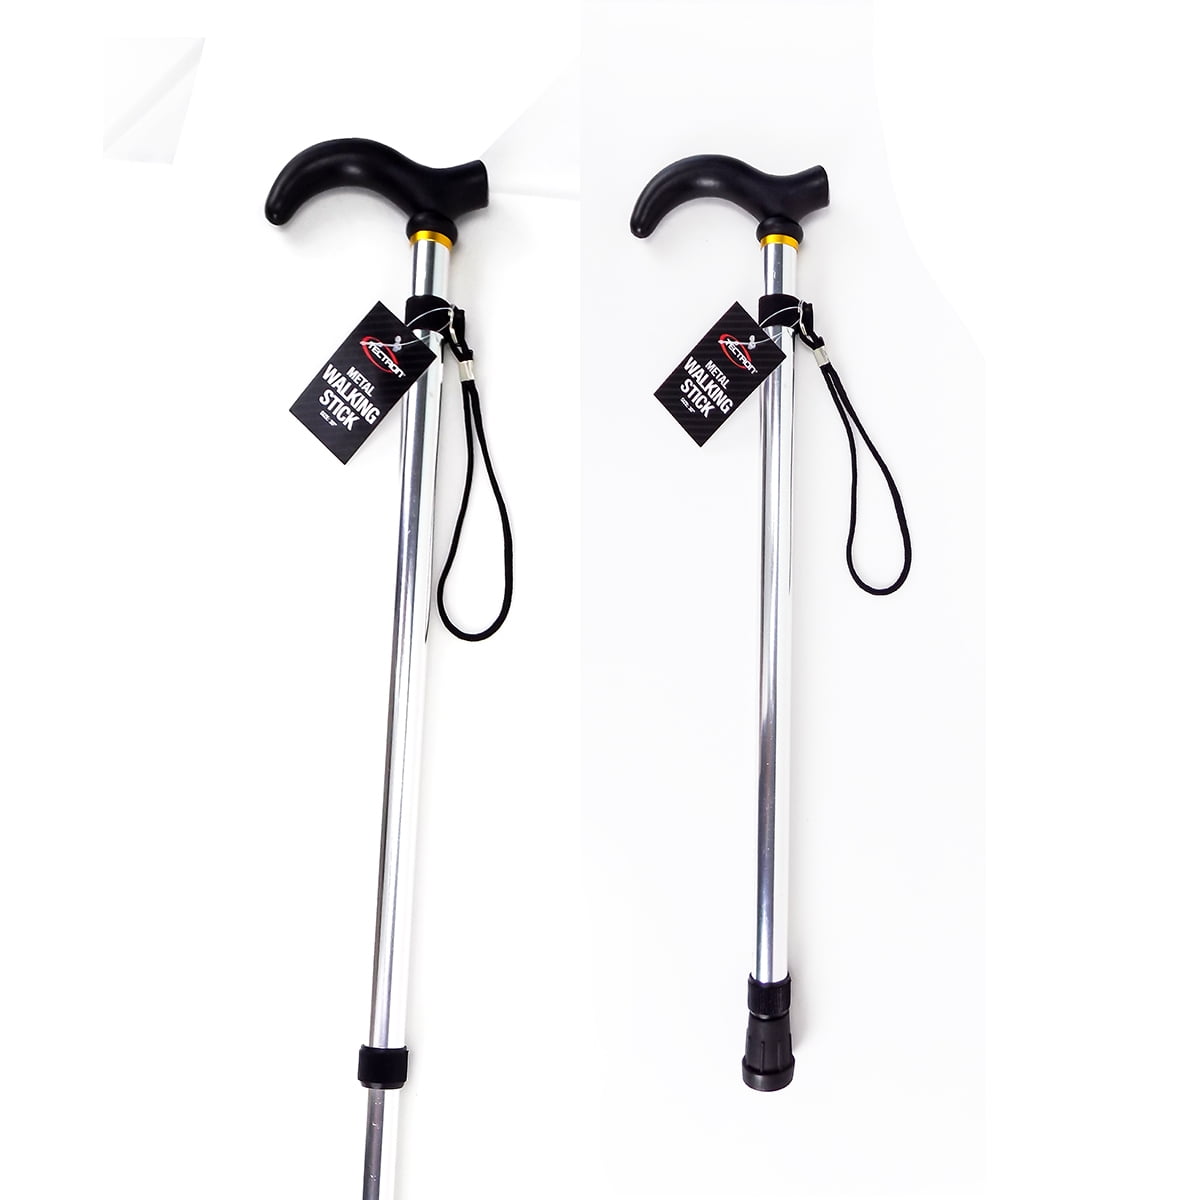 Details about   Telescopic Walking Stick Cane Hiking Rubber Tips Aluminium Climbing Equipmen QW 